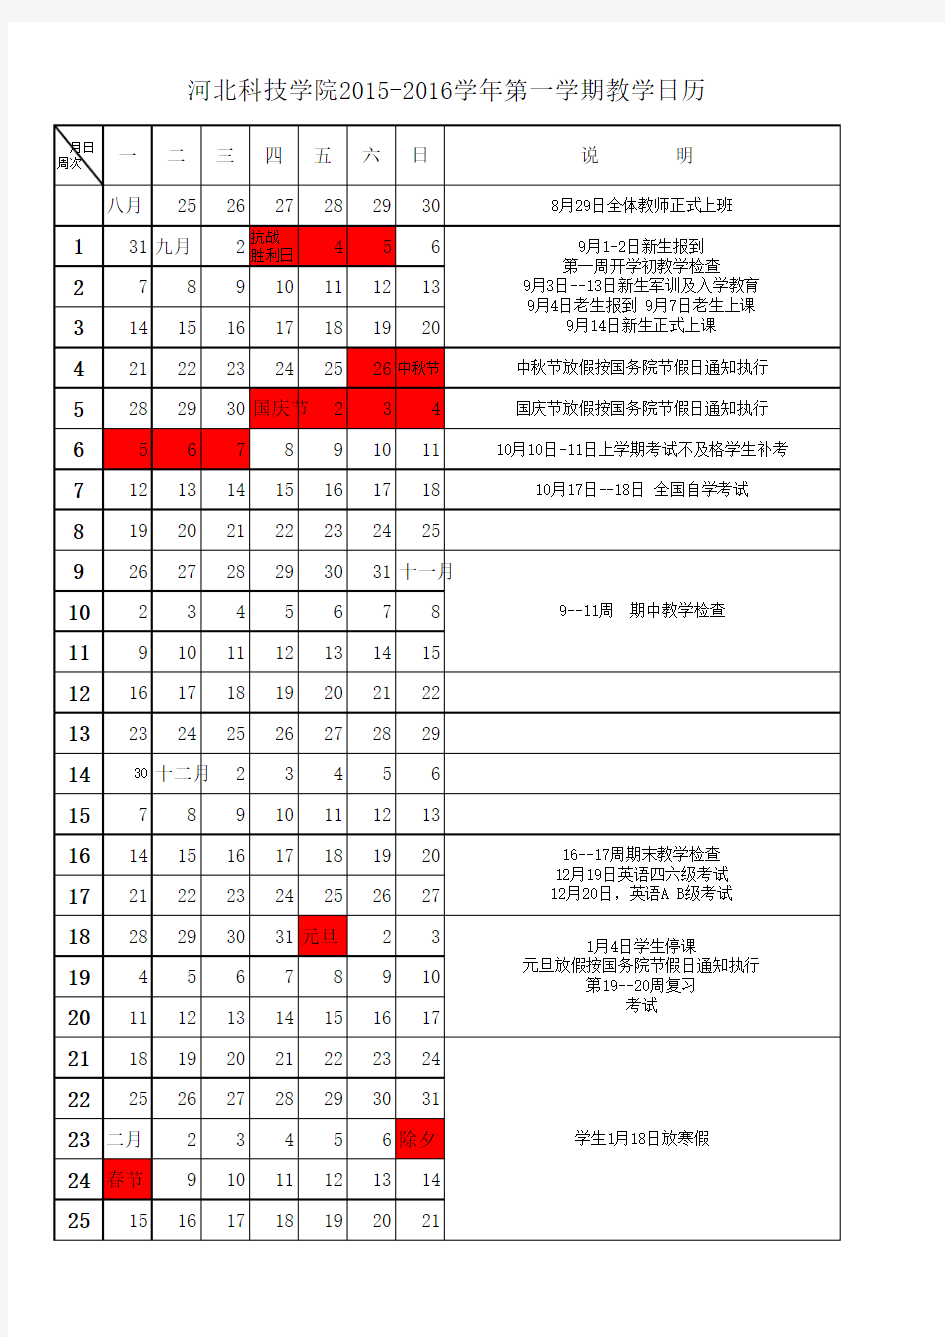 河北科技学院2014-2015学年第一学期教学日历 (1)